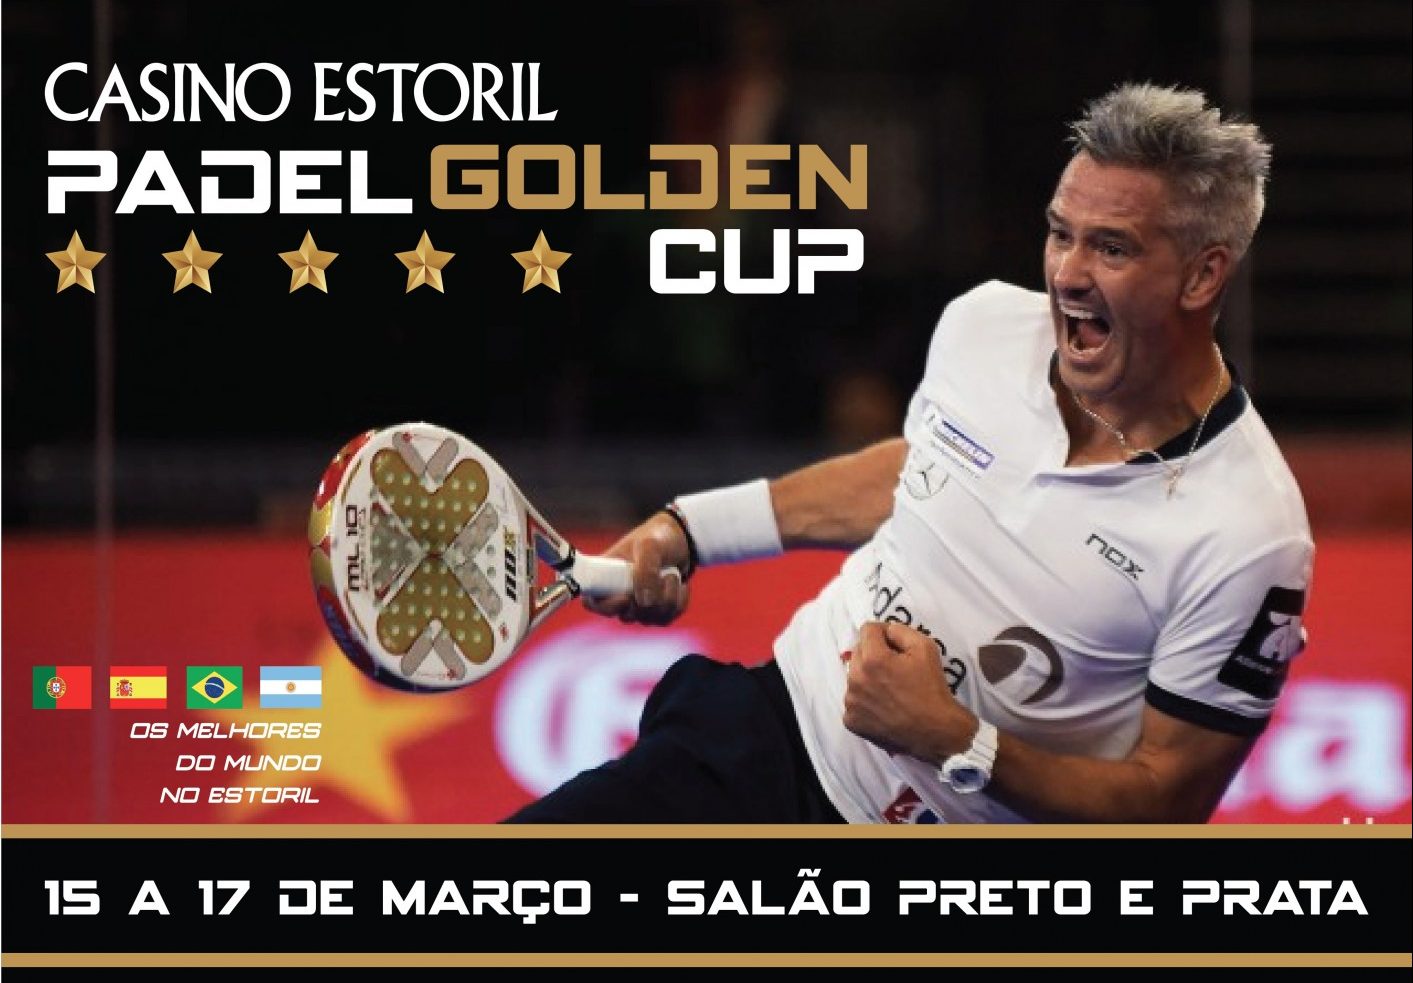 Le Padel Golden Cup vil være verdens centrum